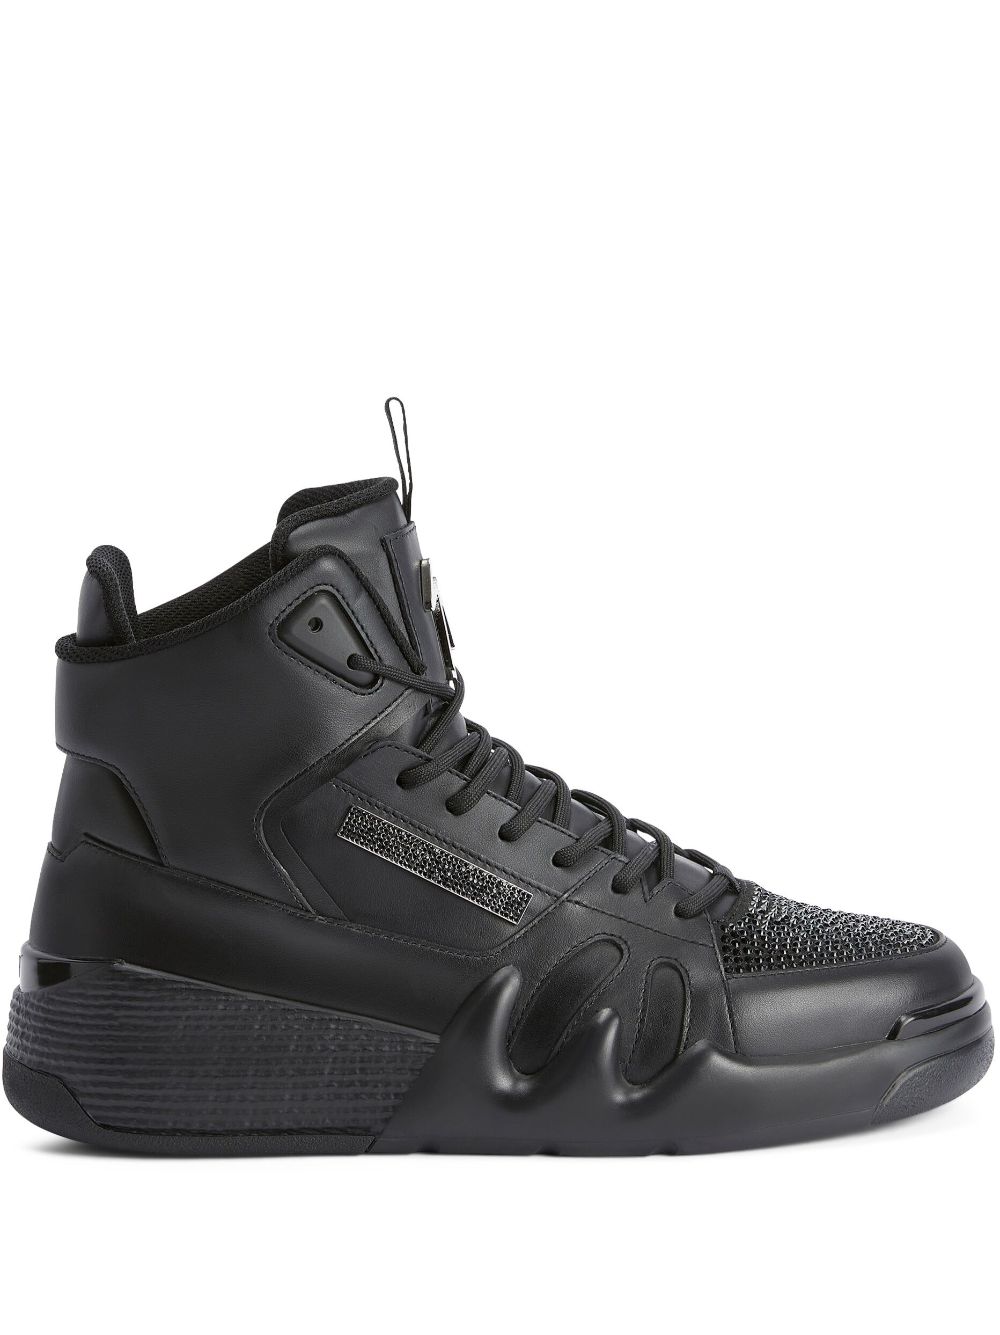 Giuseppe Zanotti Talon hi-tops leather sneakers - Black